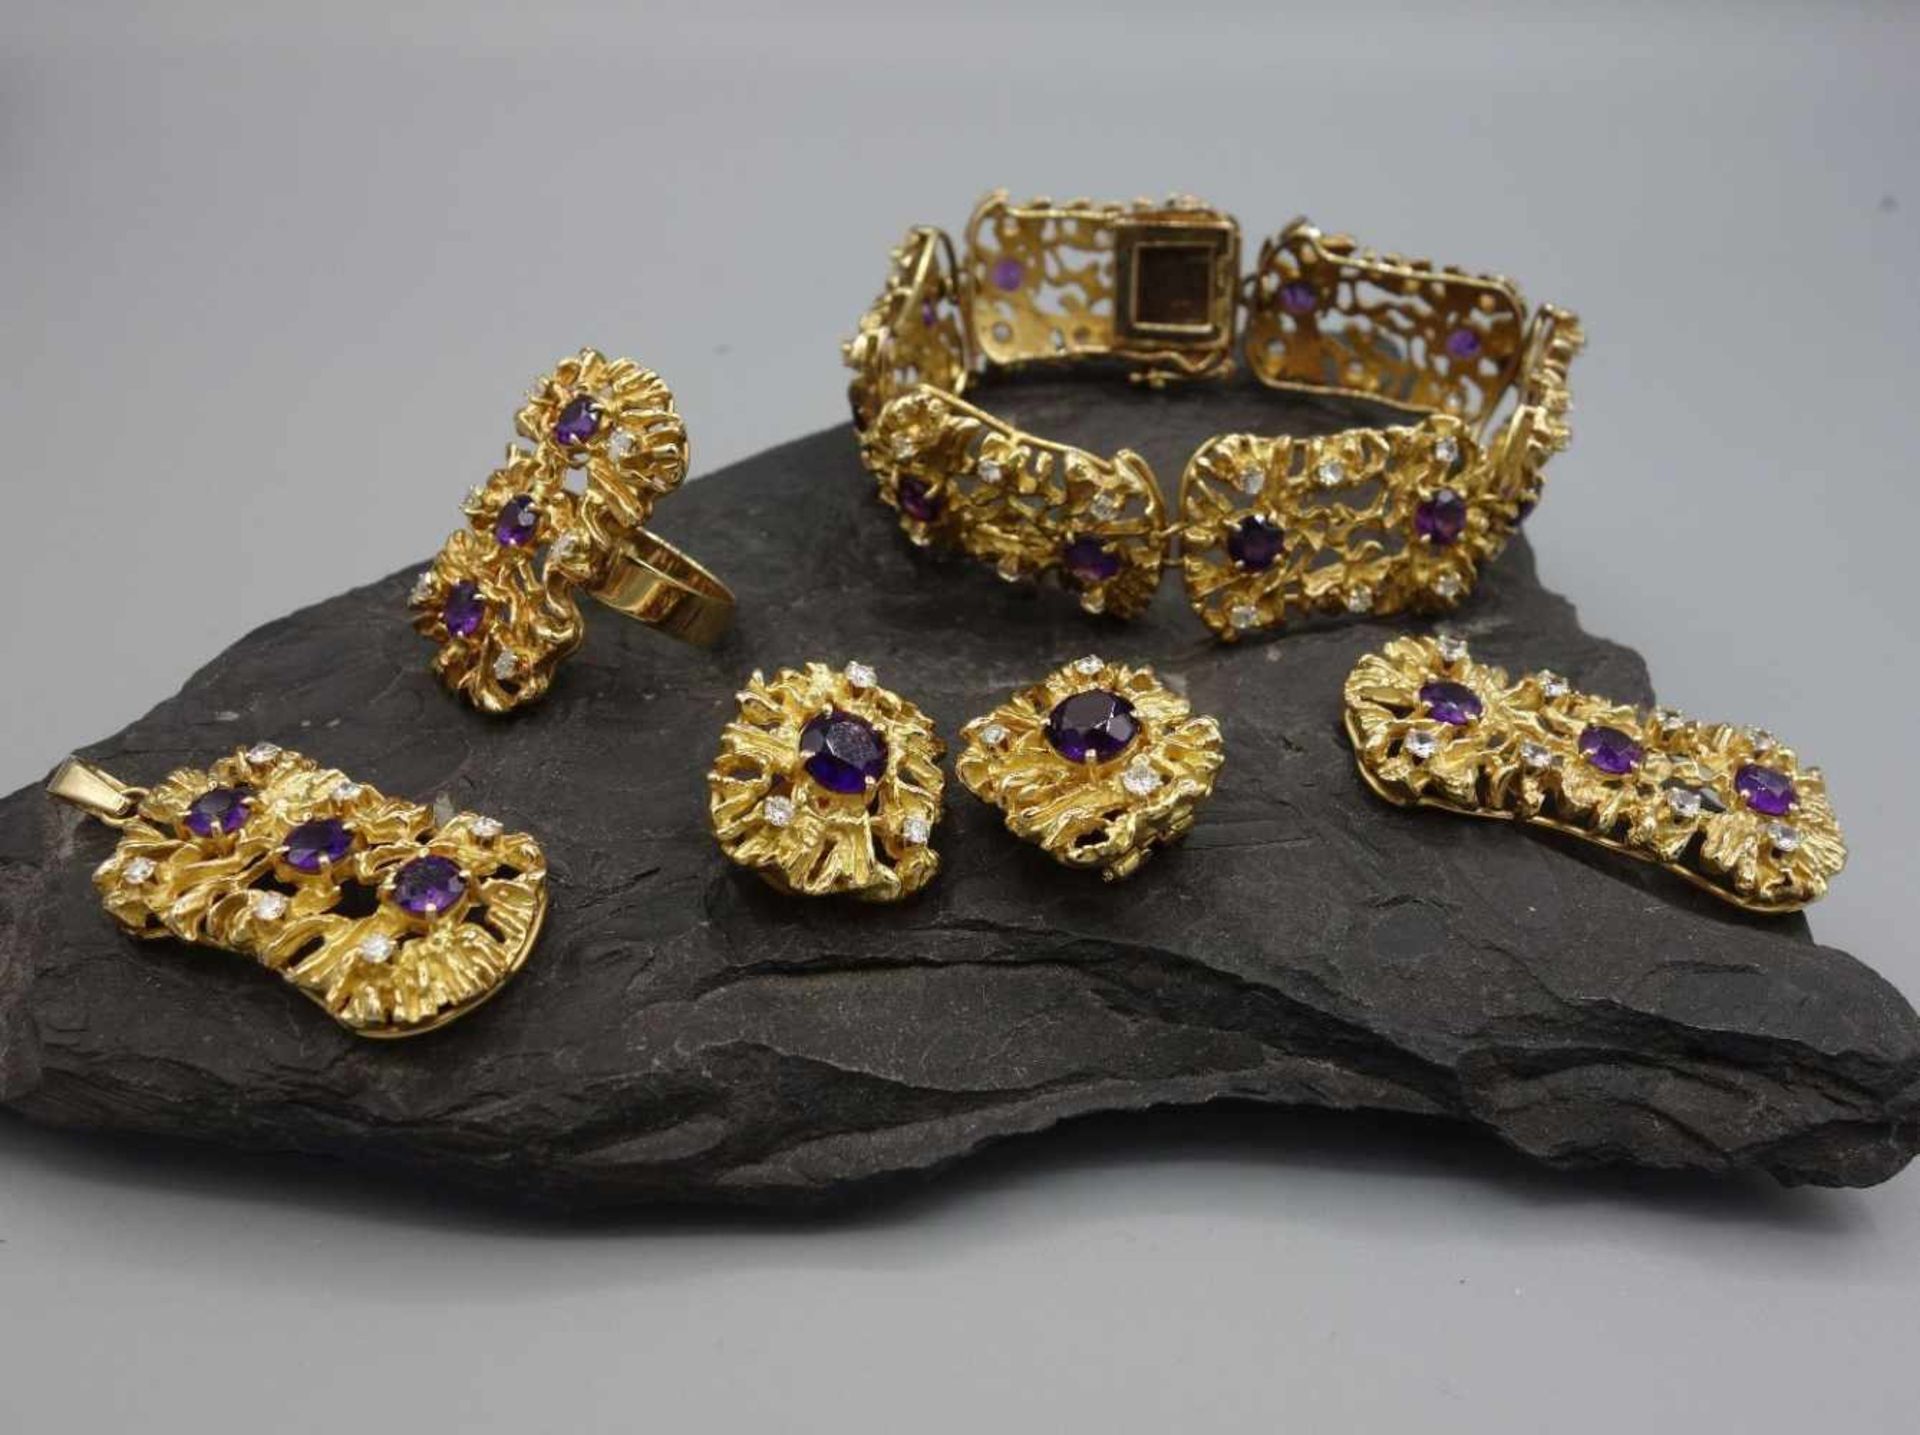 EXKLUSIVES SCHMUCKSET - Ring, Brosche, Armband, Anhänger und Ohrclips. 750er Gelbgold (91,1